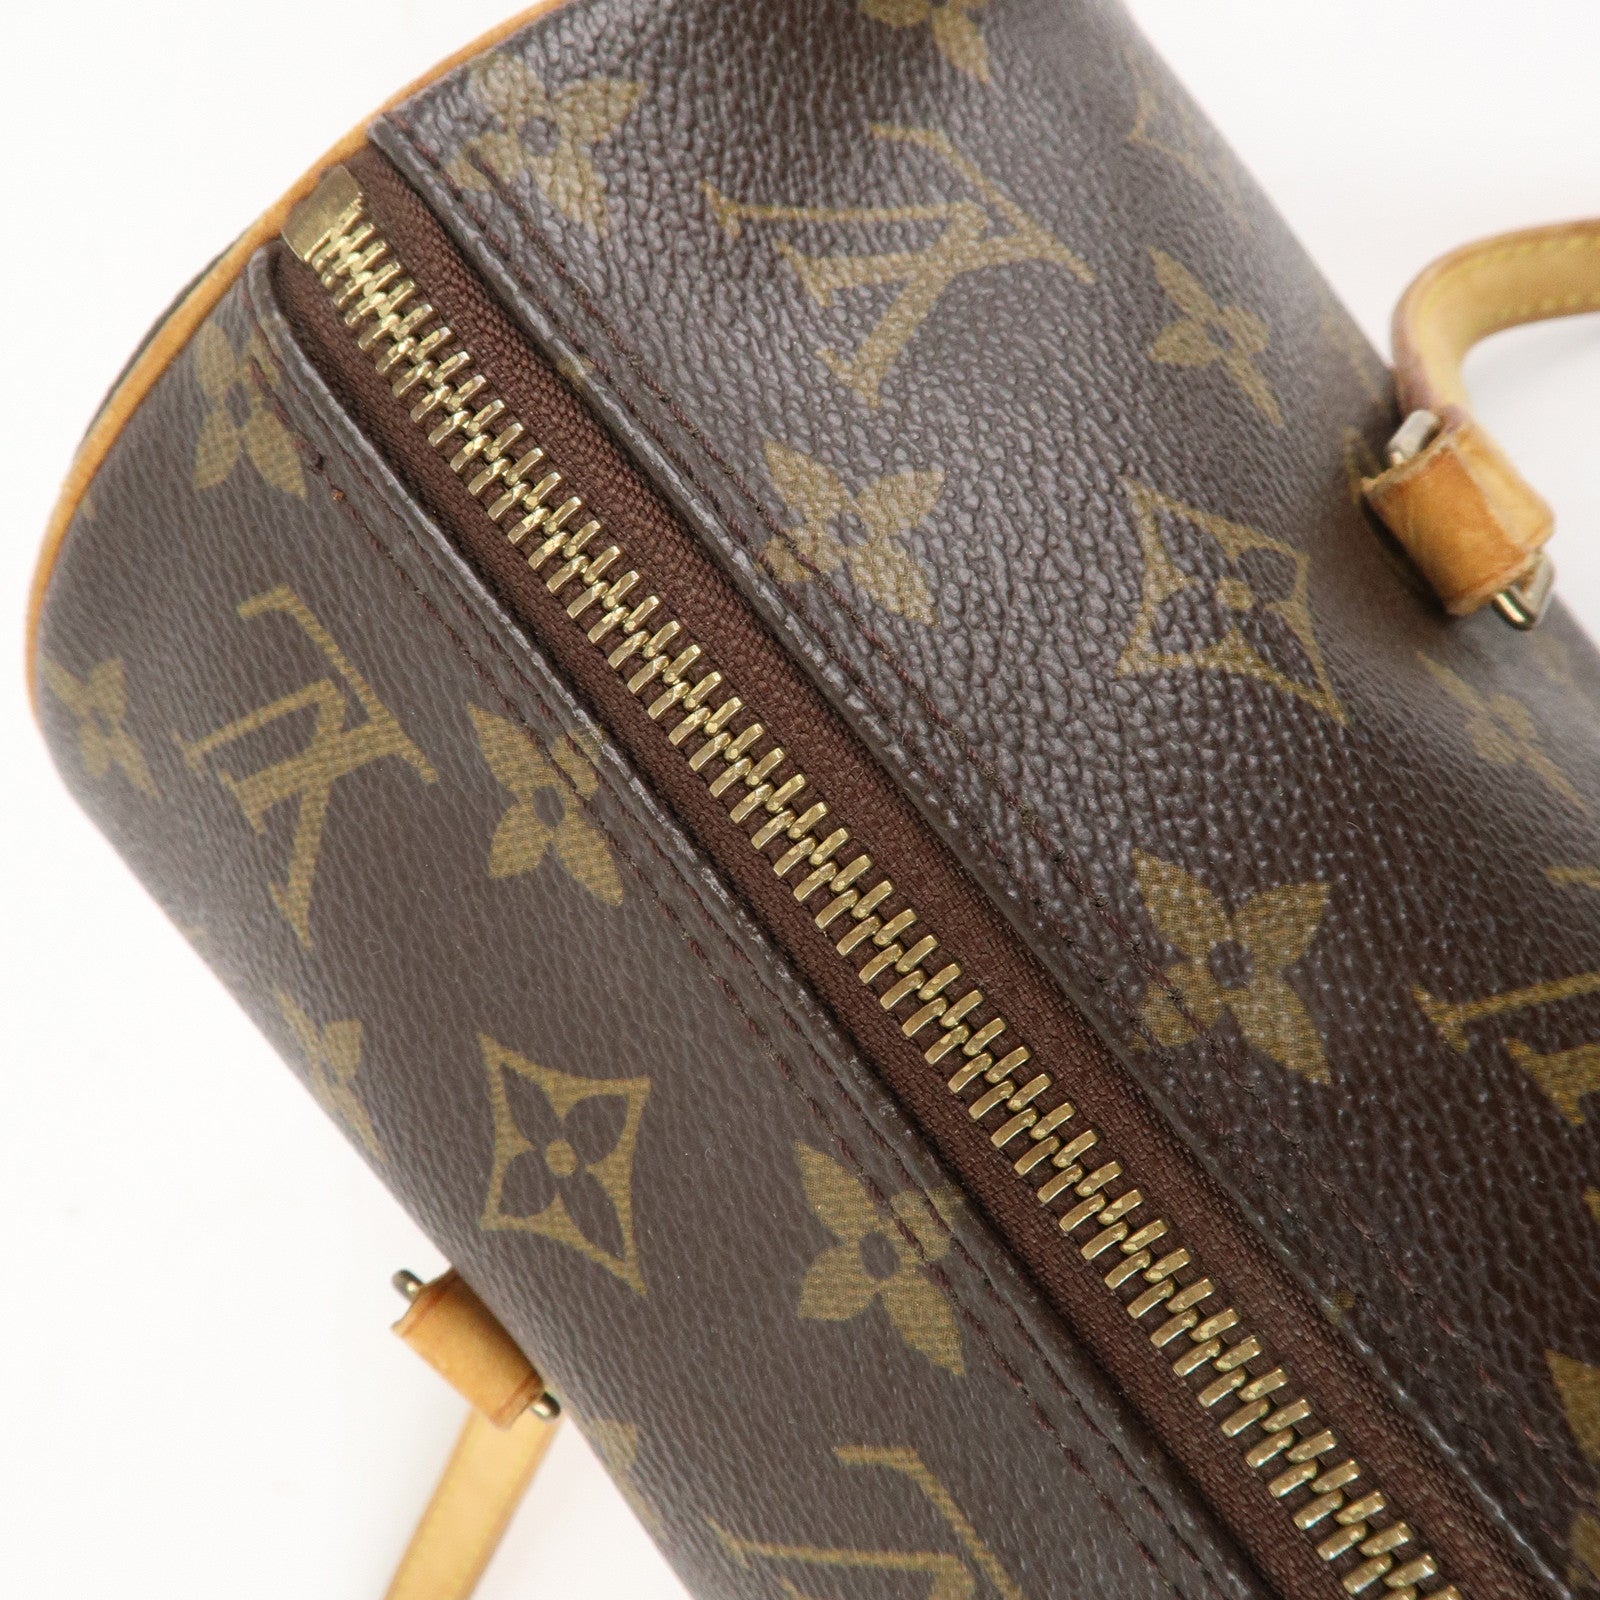 Vintage Louis Vuitton Papillon 30 Bag Review 